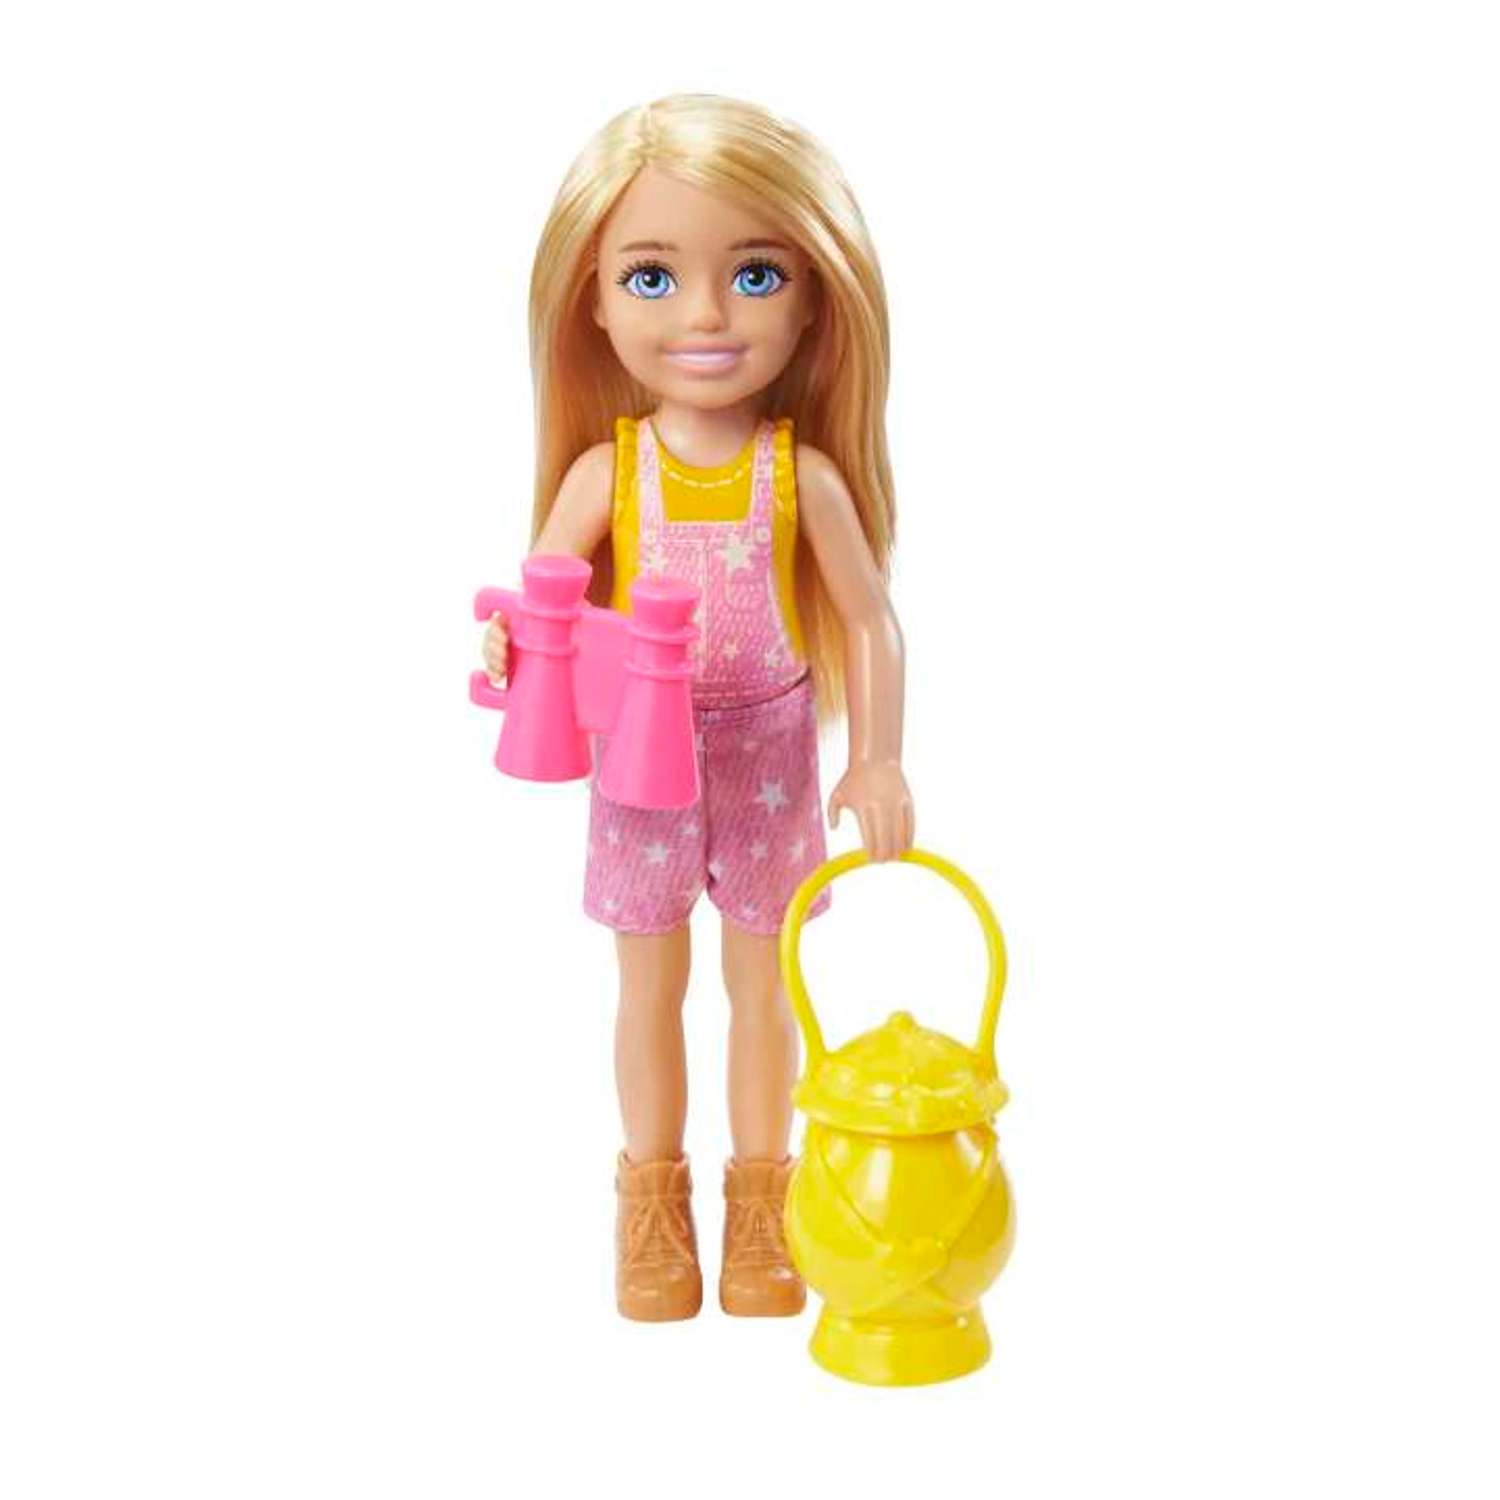 Кукла Barbie Color Reveal Челси в непрозрачной упаковке (Сюрприз) HDN77 HDN77 - фото 1